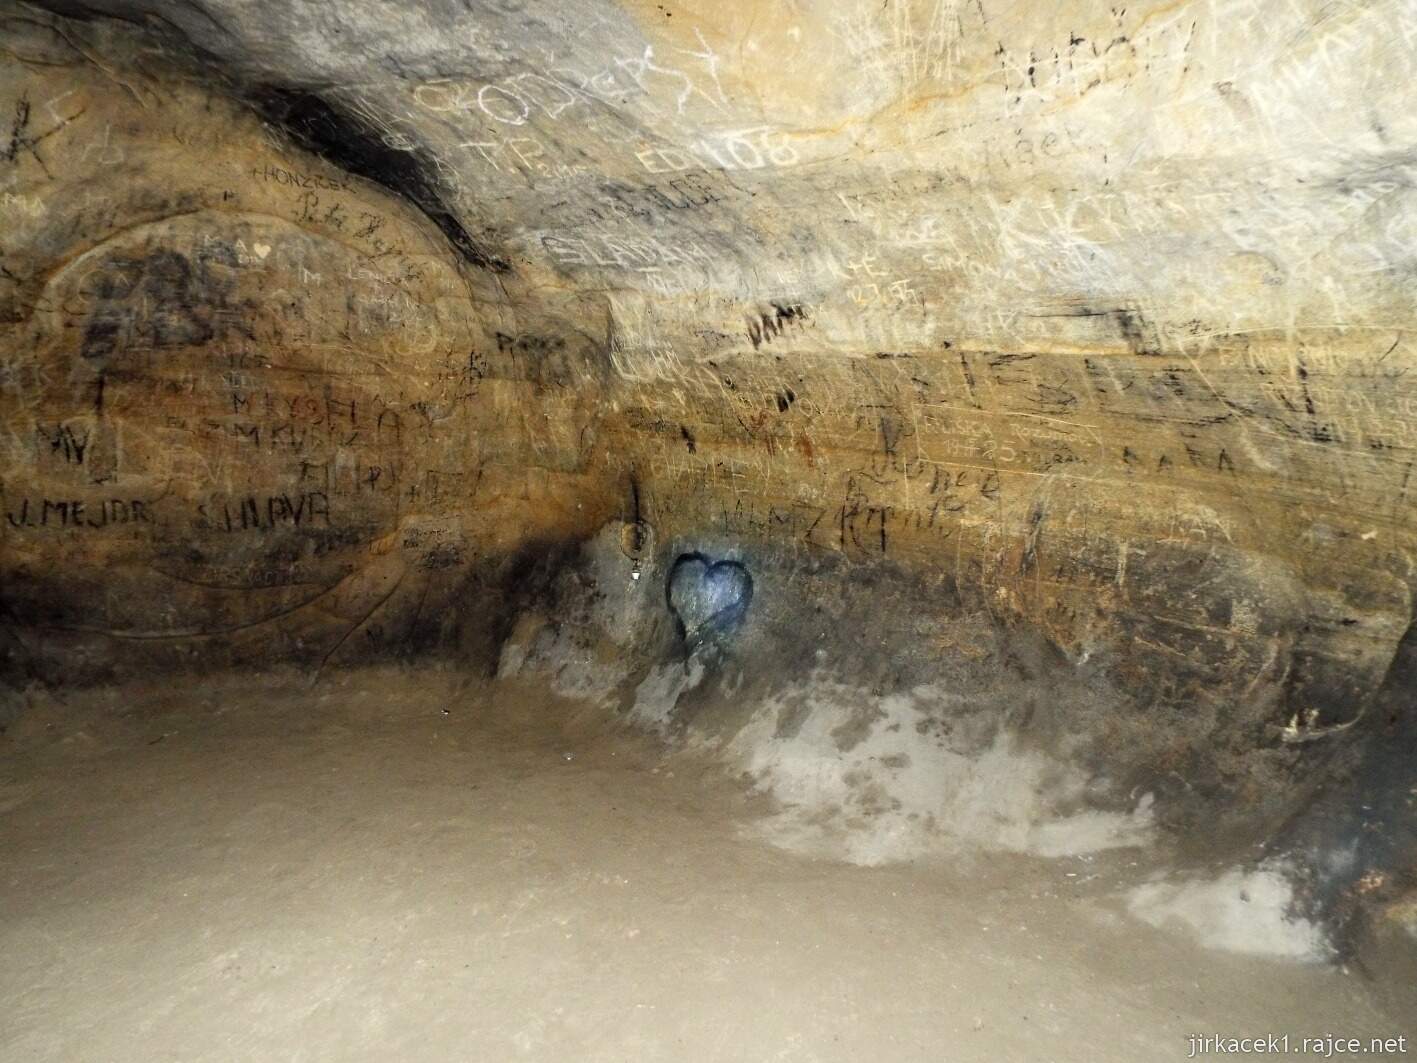 05 - Jeskyně Postojná 07 - uvnitř jeskyně